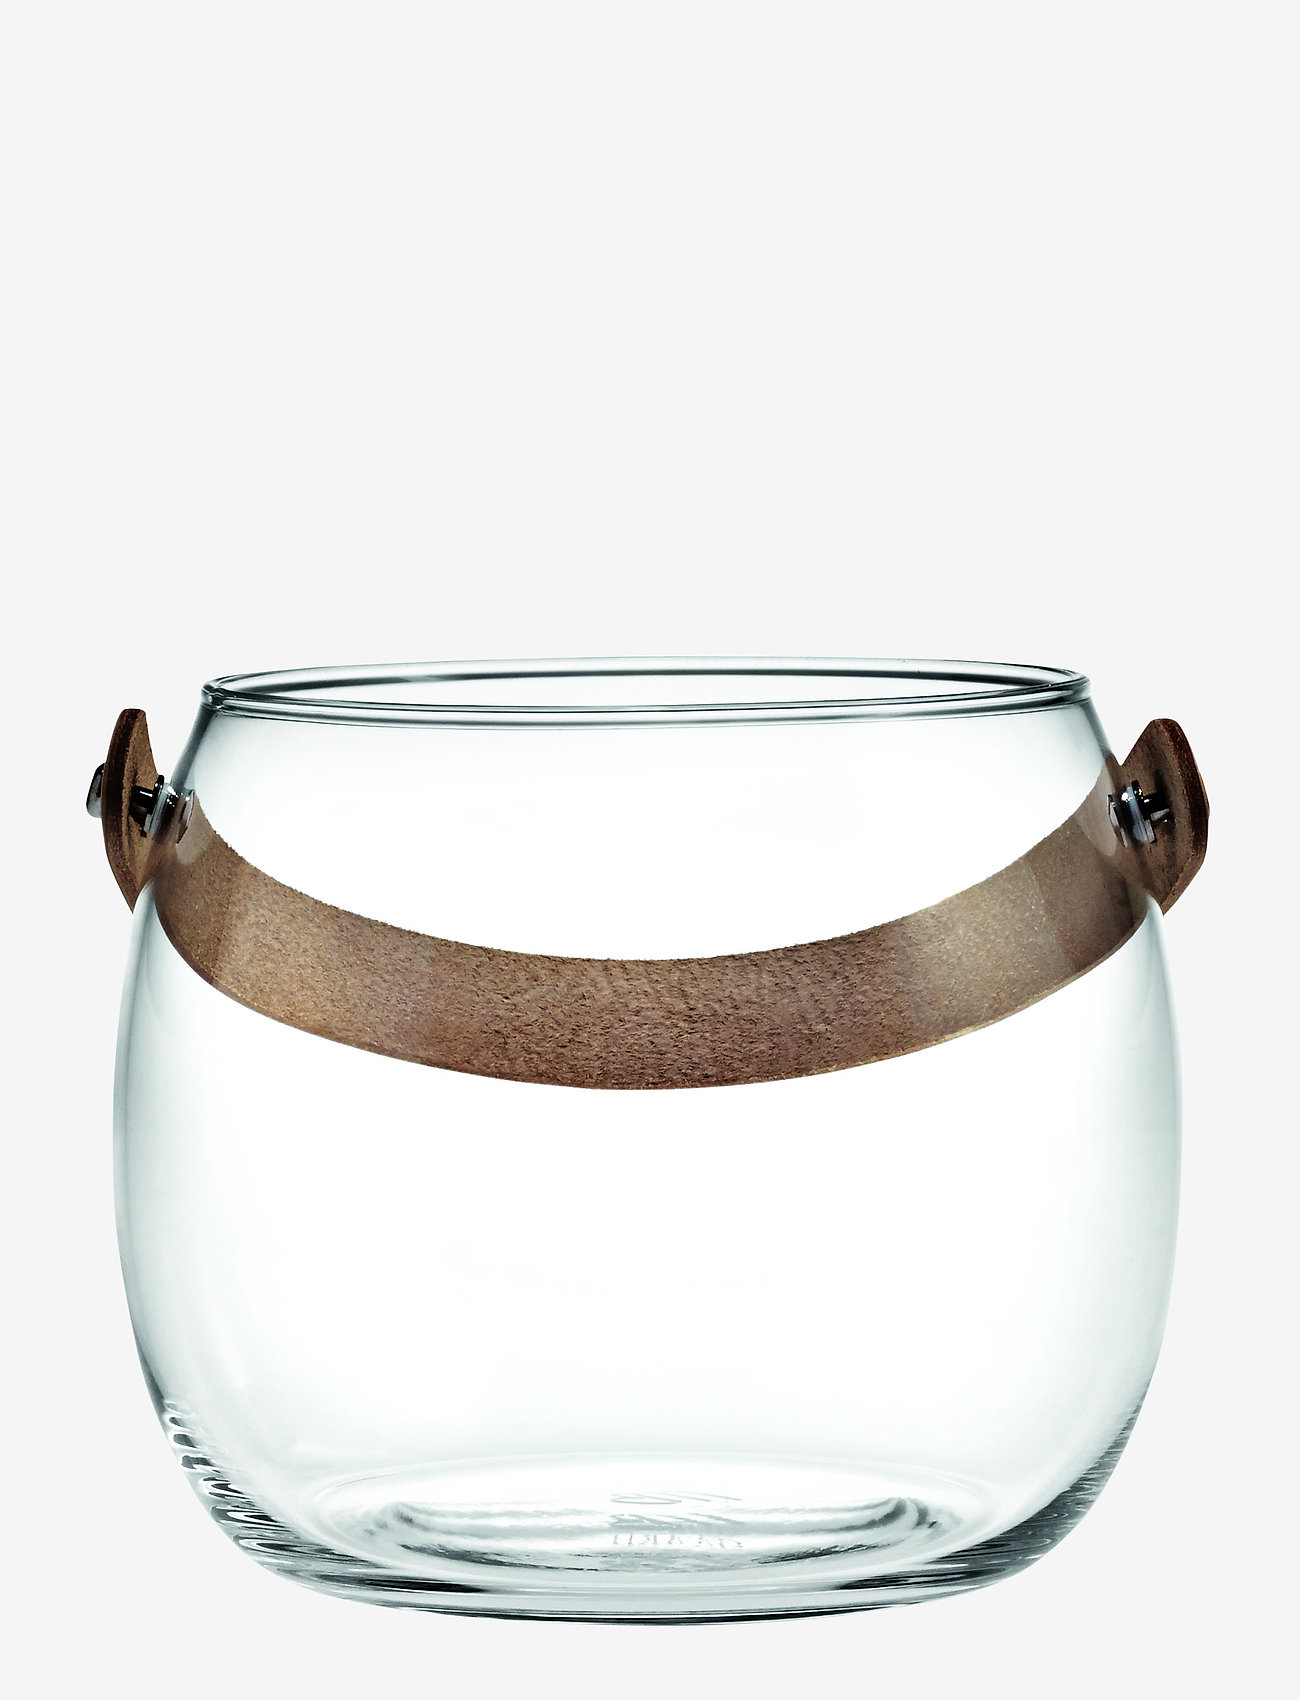 Holmegaard - DWL Jar Ø15,5cm - big vases - clear - 0